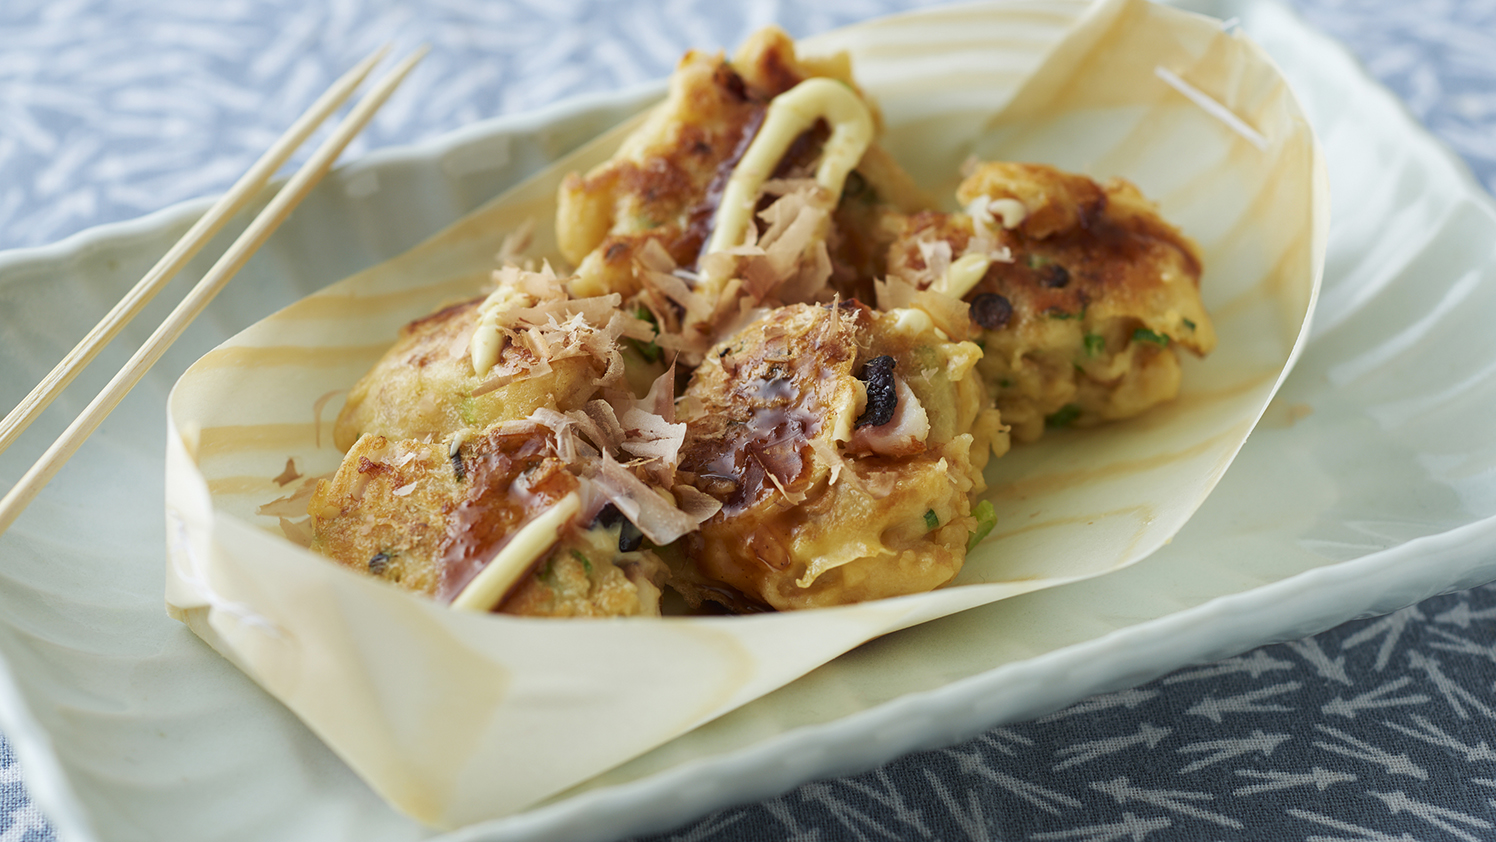 Recette takoyaki, petites boules de poulpes • Cuisine Japon